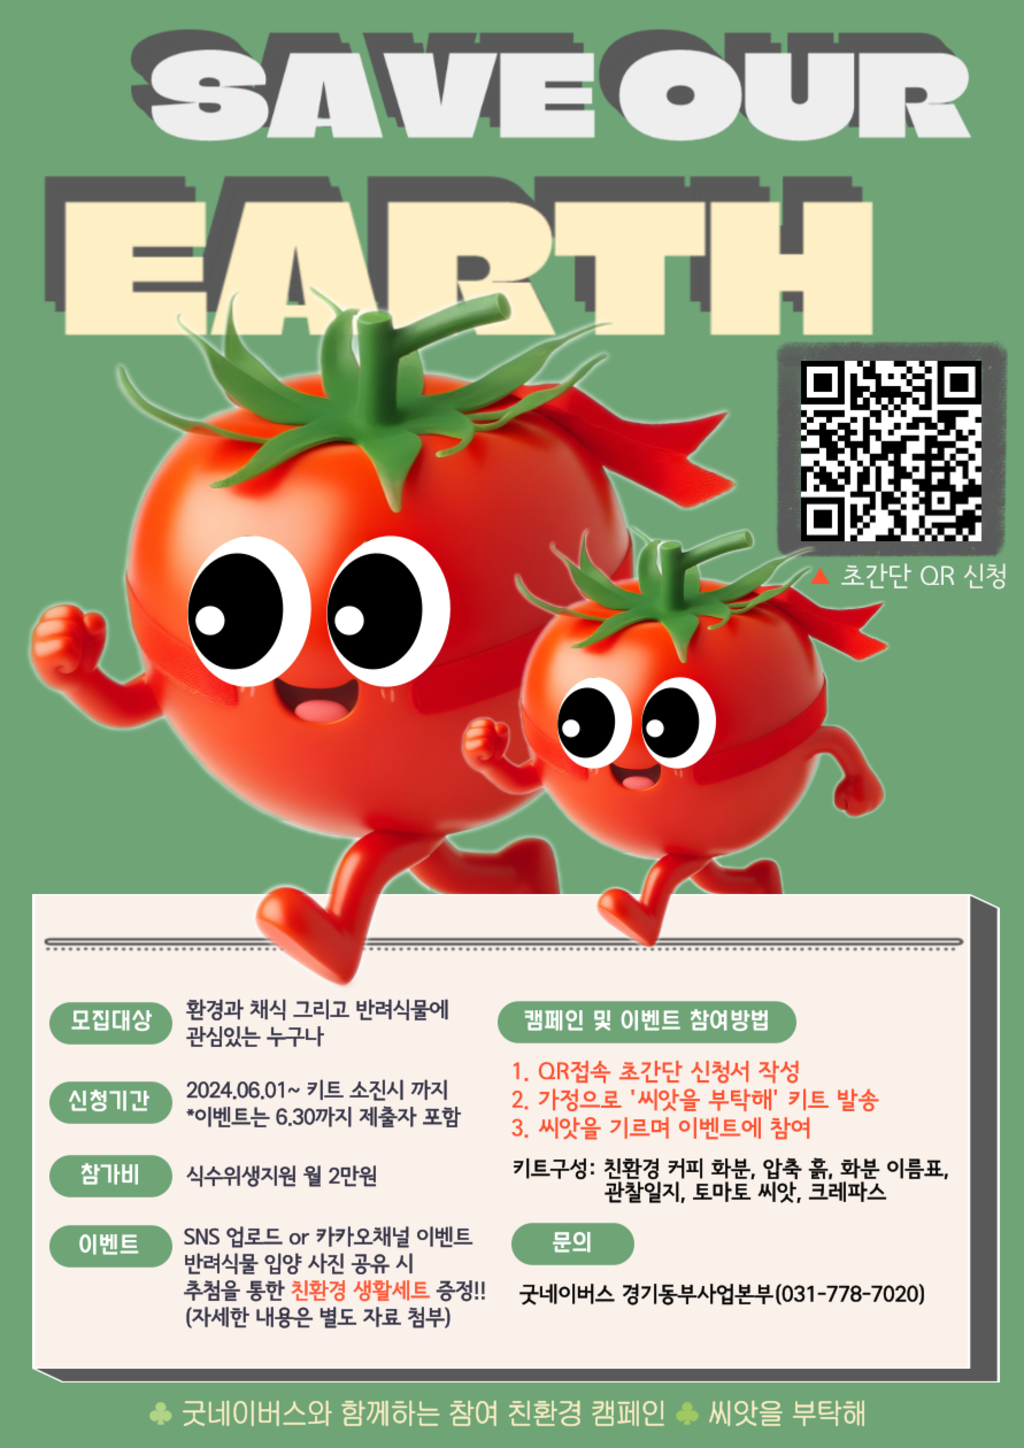 굿네이버스 친환경 캠페인 '씨앗을 부탁해' 1차 참여자 모집